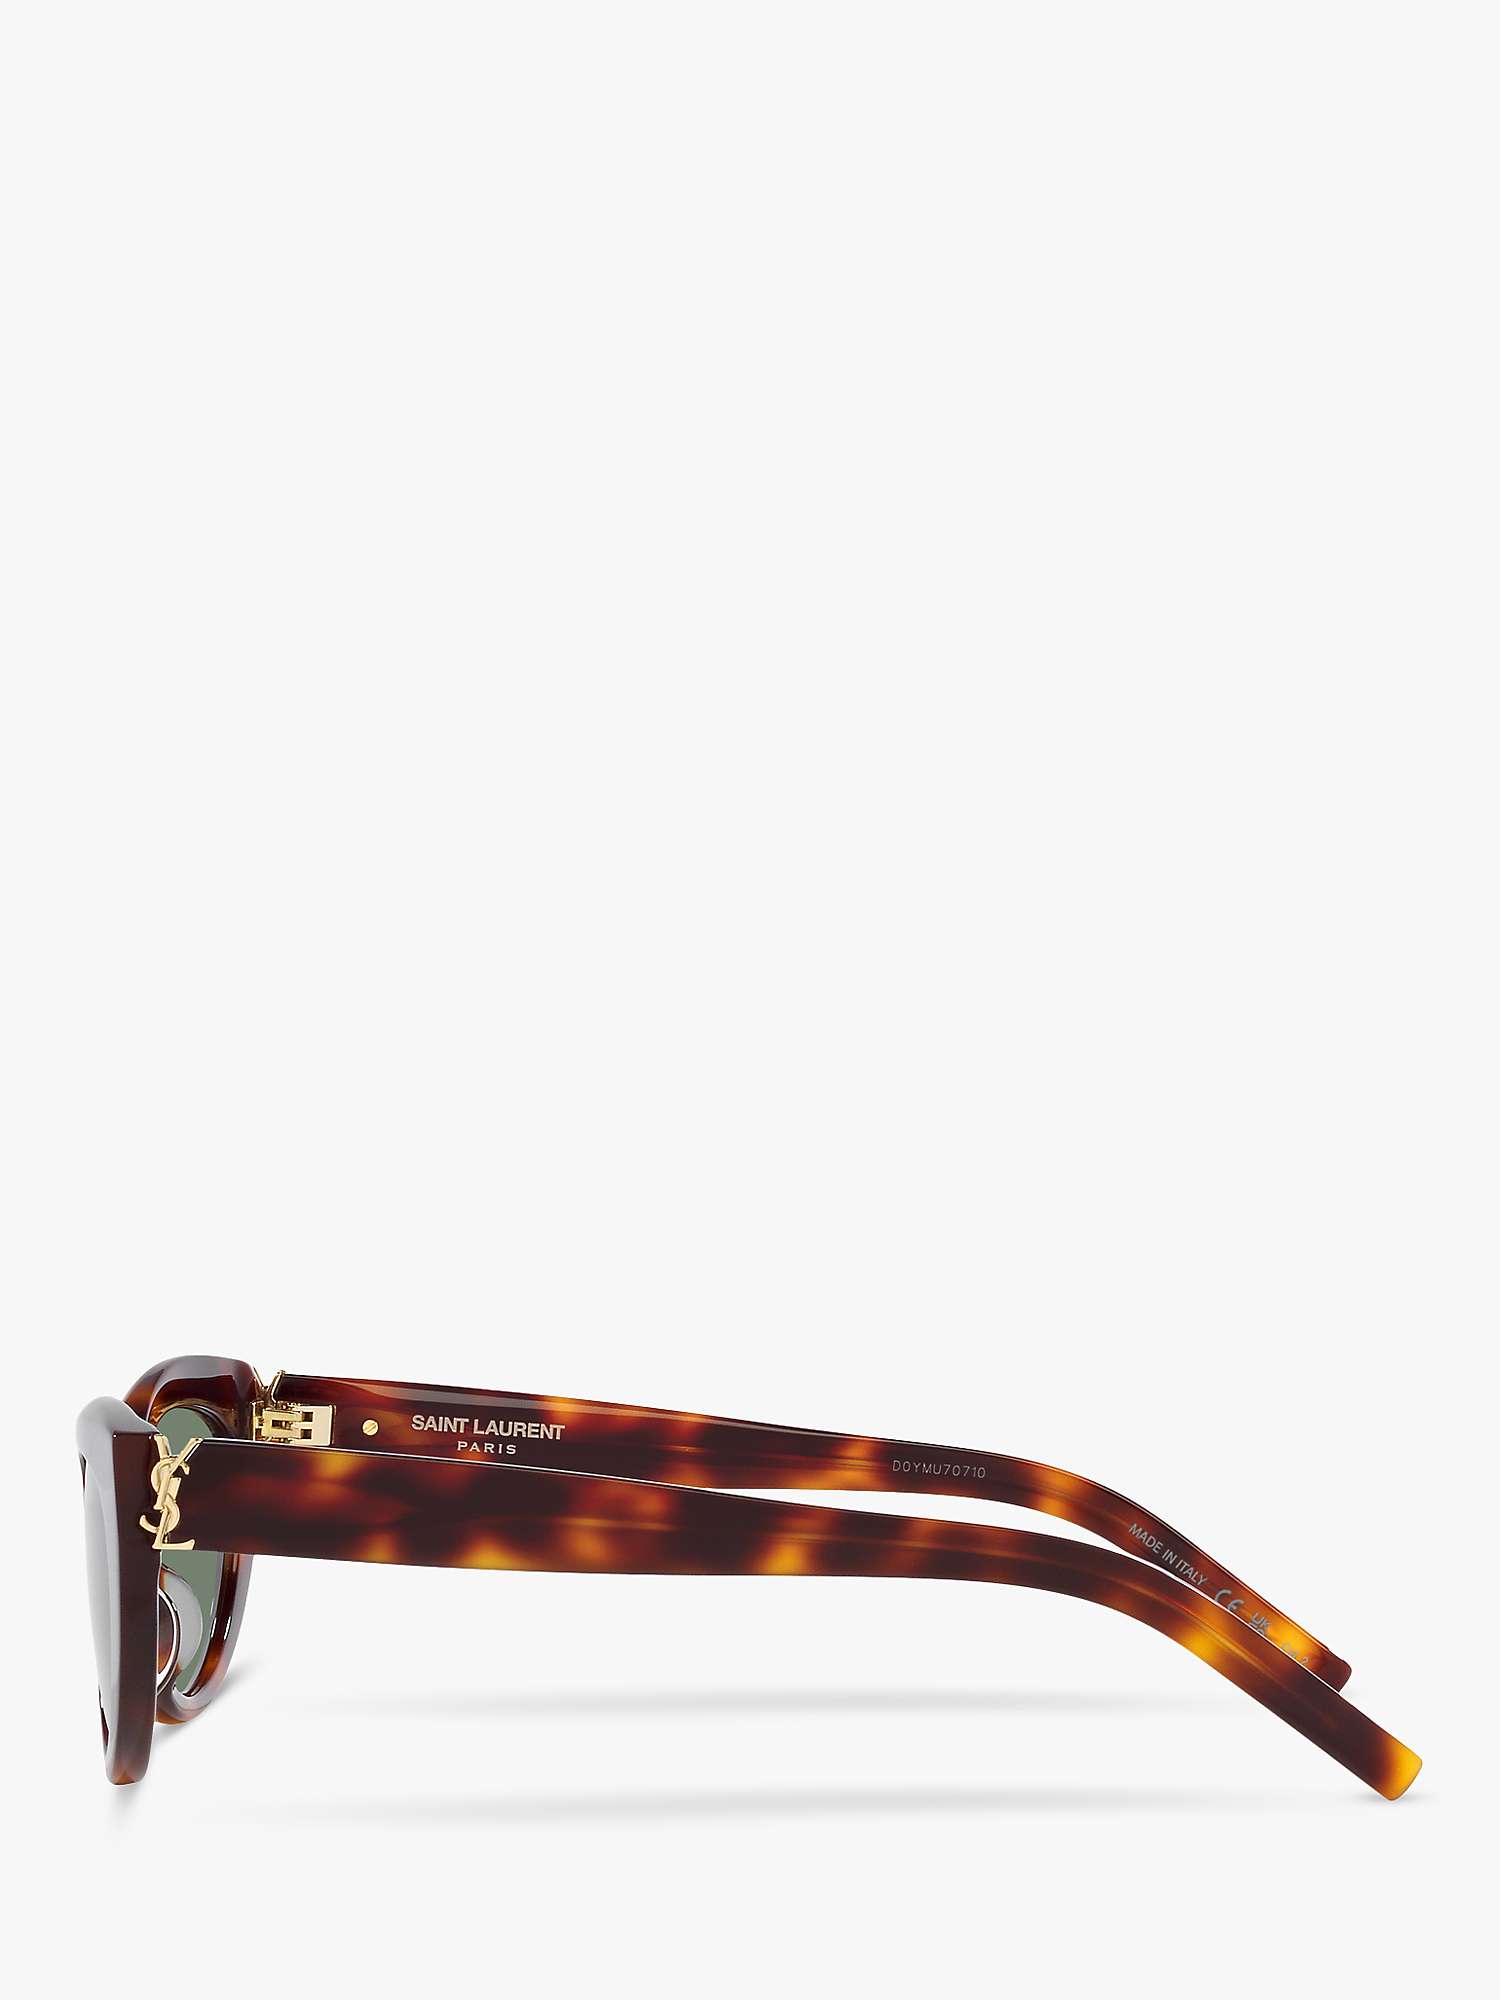 Buy Yves Saint Laurent YS000461 Unisex Oval Sunglasses, Tortoise/Green Online at johnlewis.com